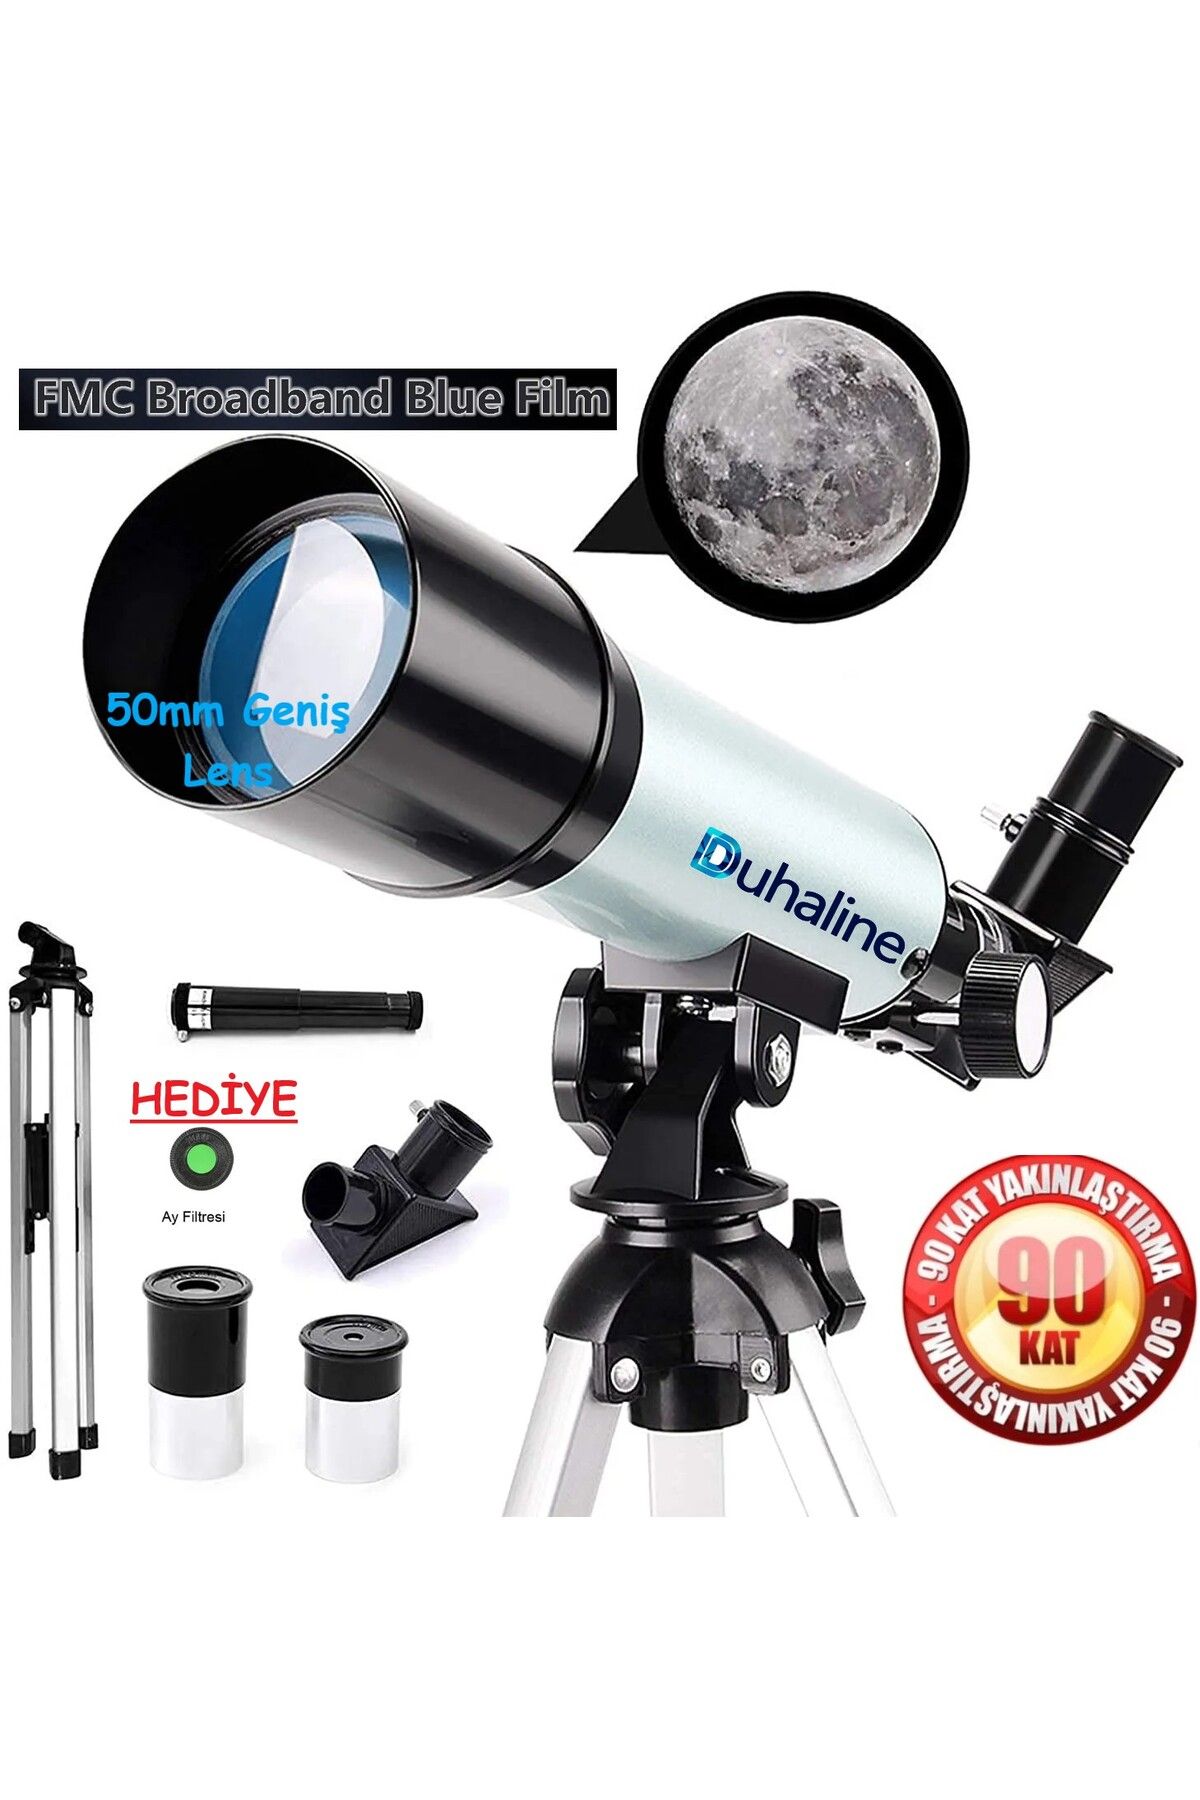 DUHALINE Teleskop 90 Kat Yakınlaştırma 50mm Eğitici Astronomik Uzay Doğa Ay Gözlem Teleskobu+Ay Filtresi